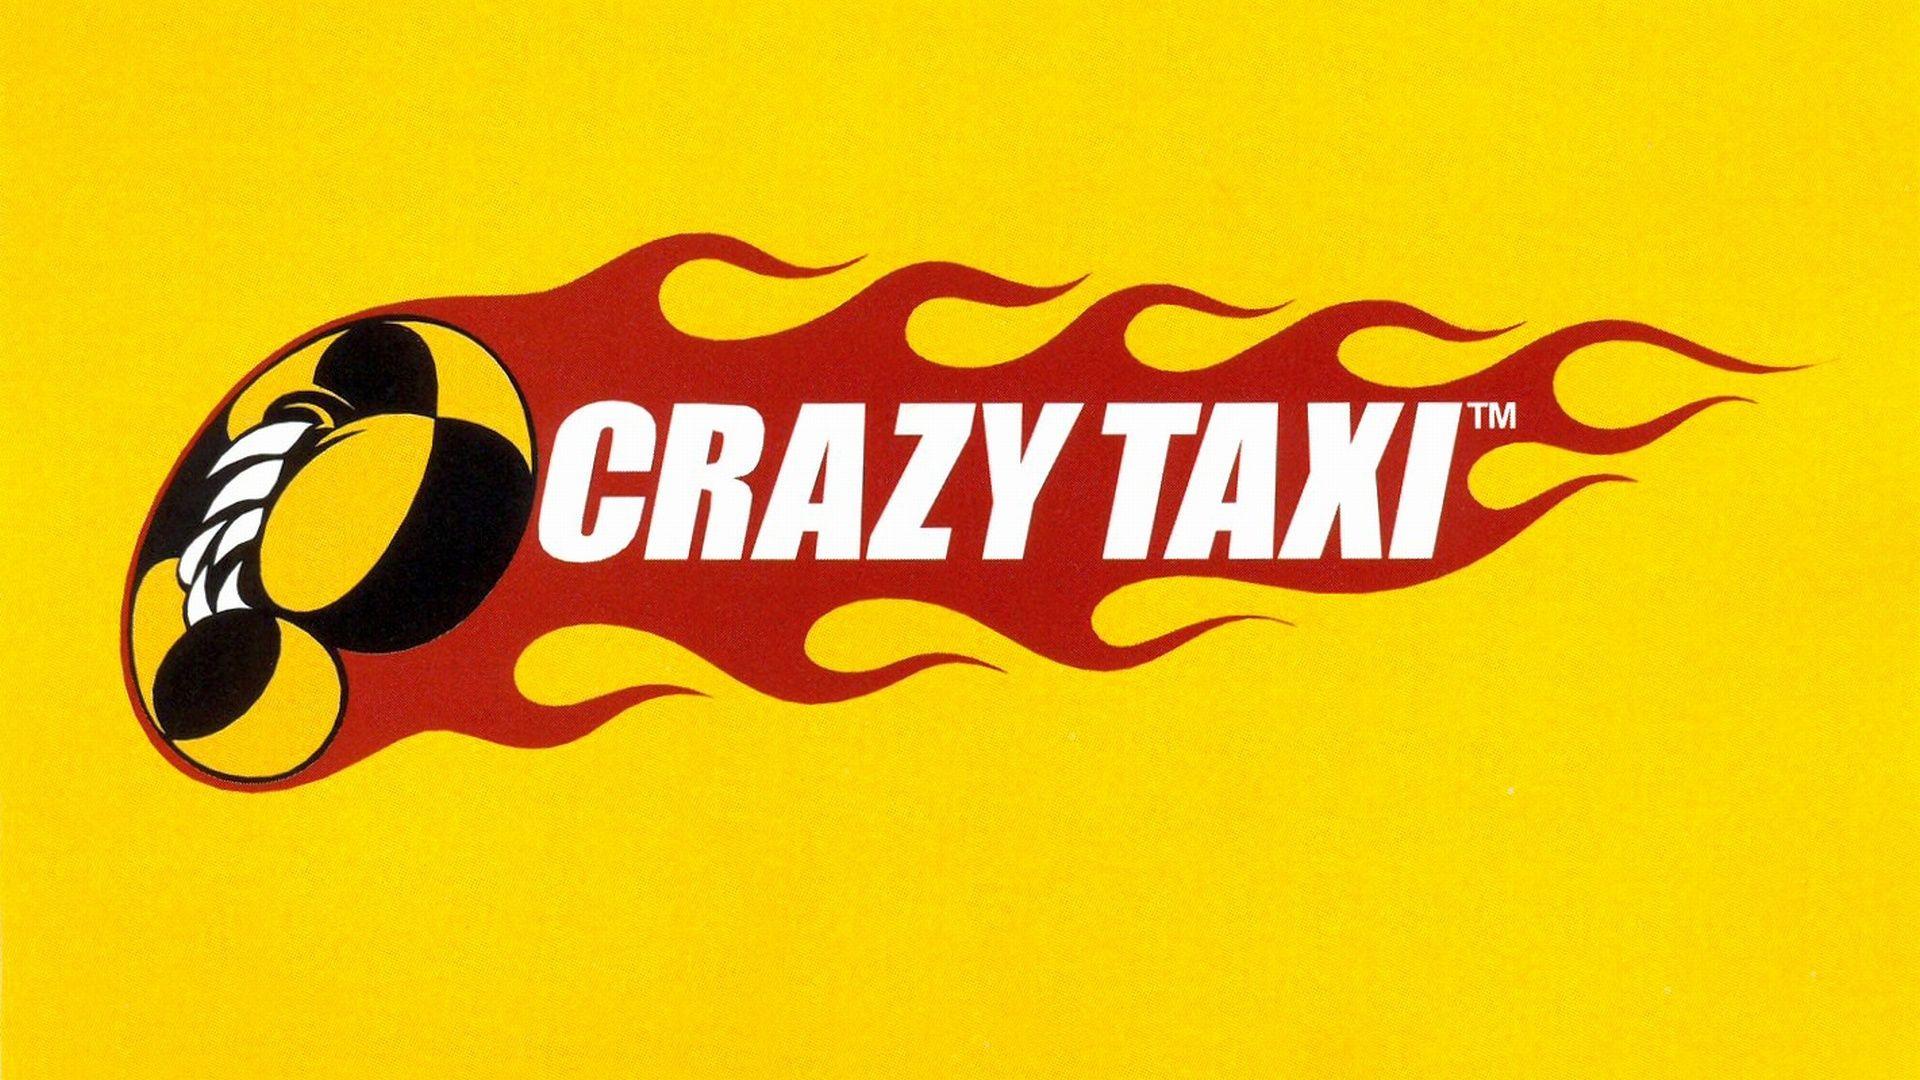 Crazy Taxi HD Wallpaper